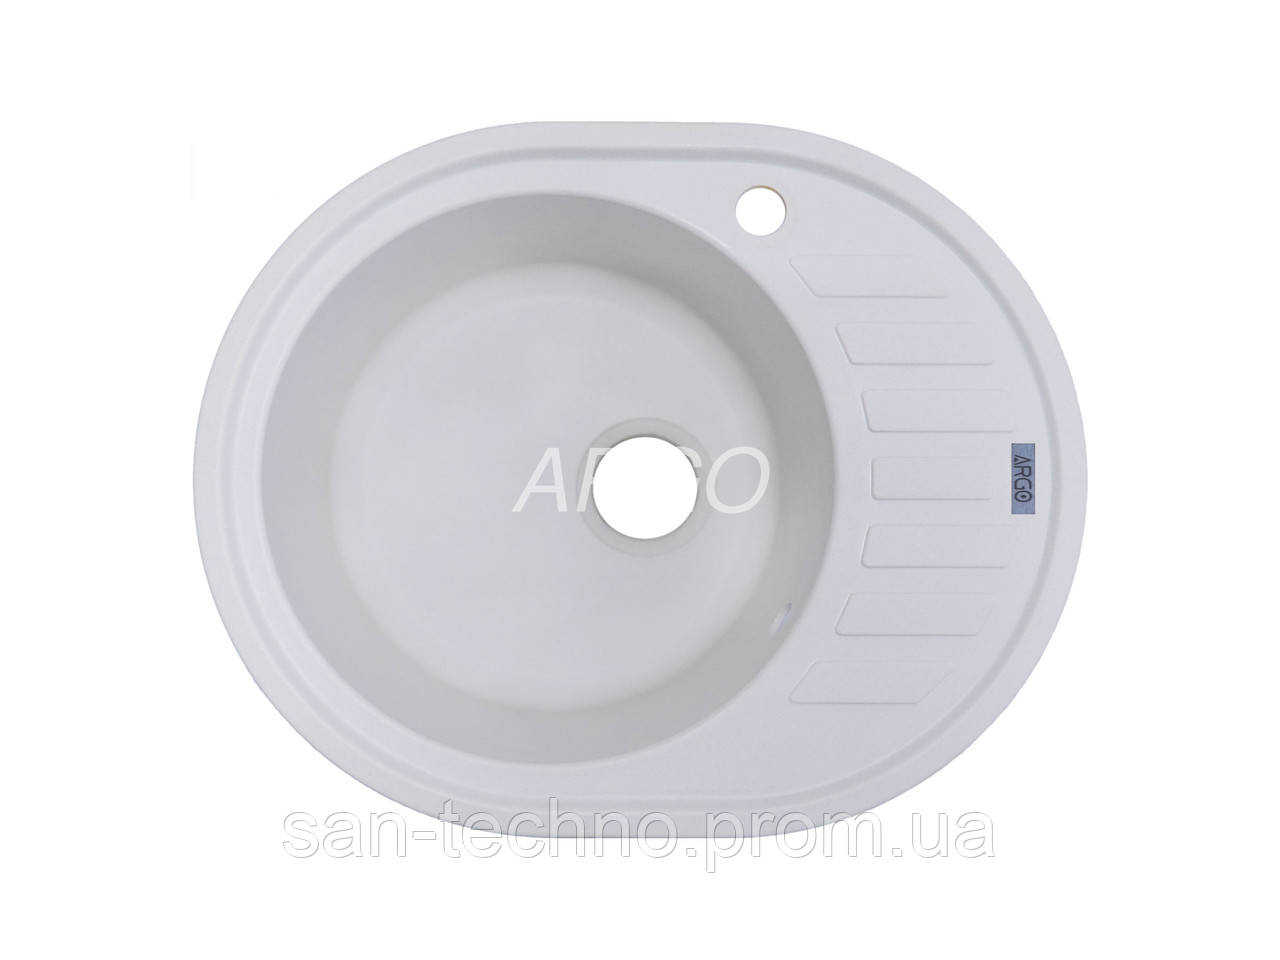 Гранітна овальна біла мийка для кухні Argo Ovale White 620*500*200